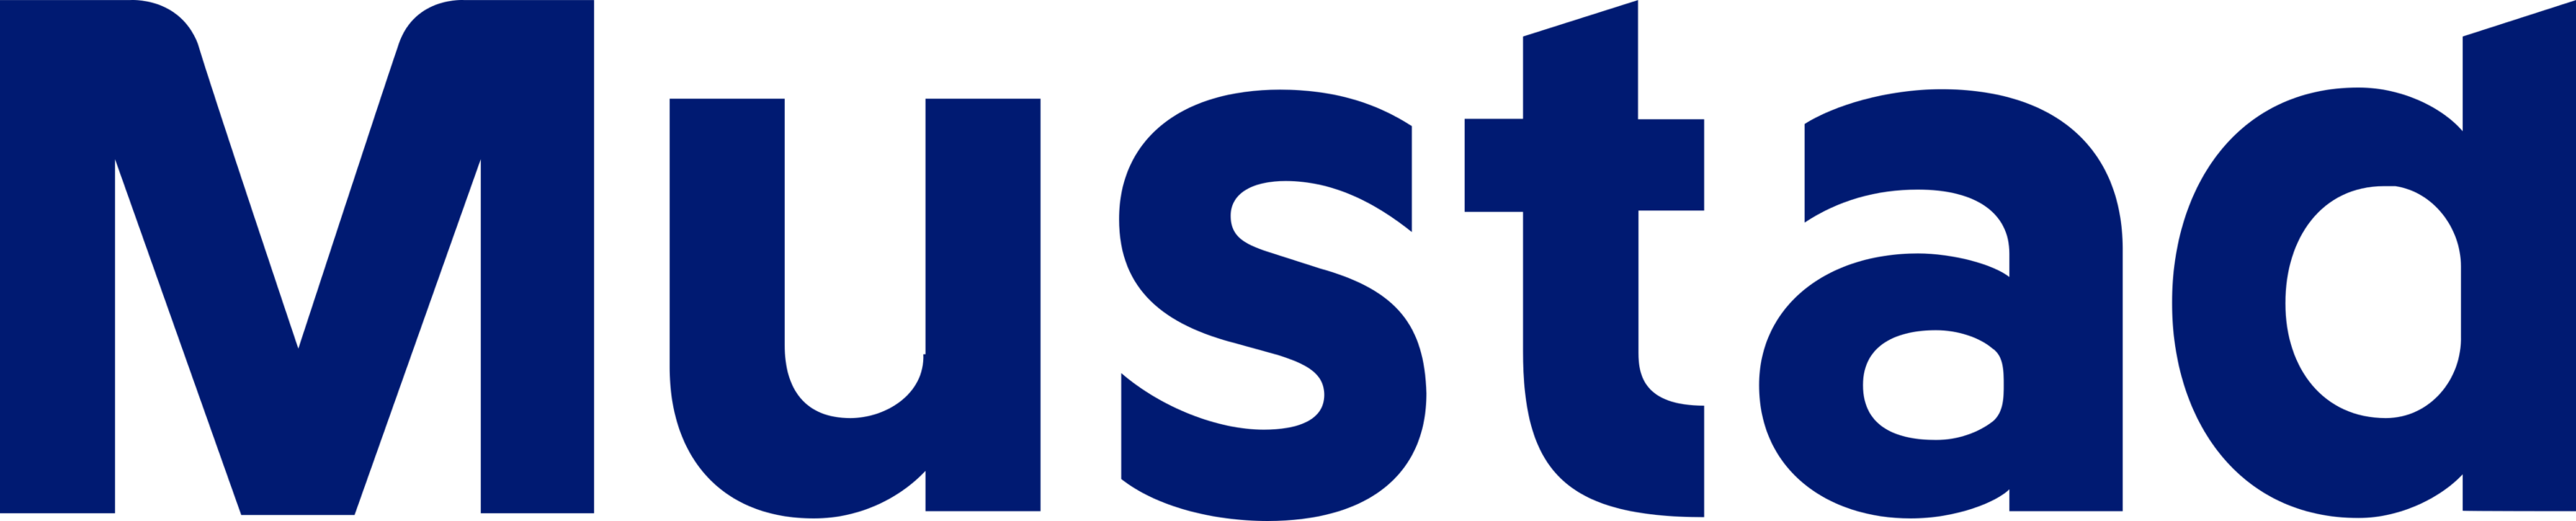 Mustad Fishing Logo